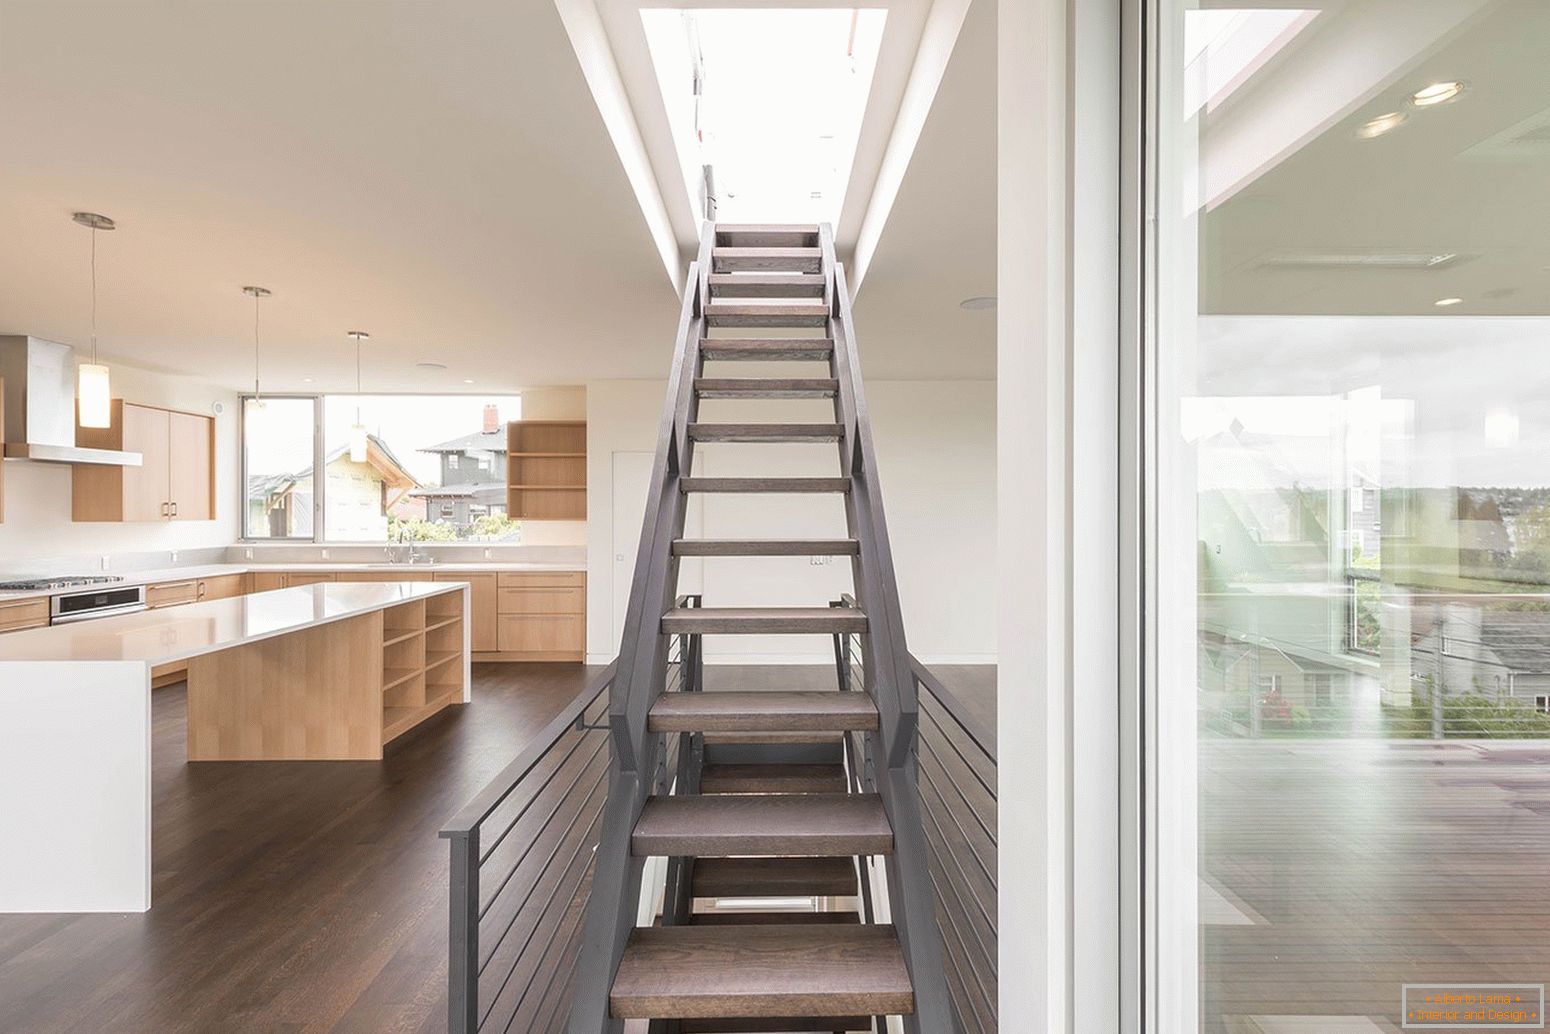 Escaleras en estilo loft